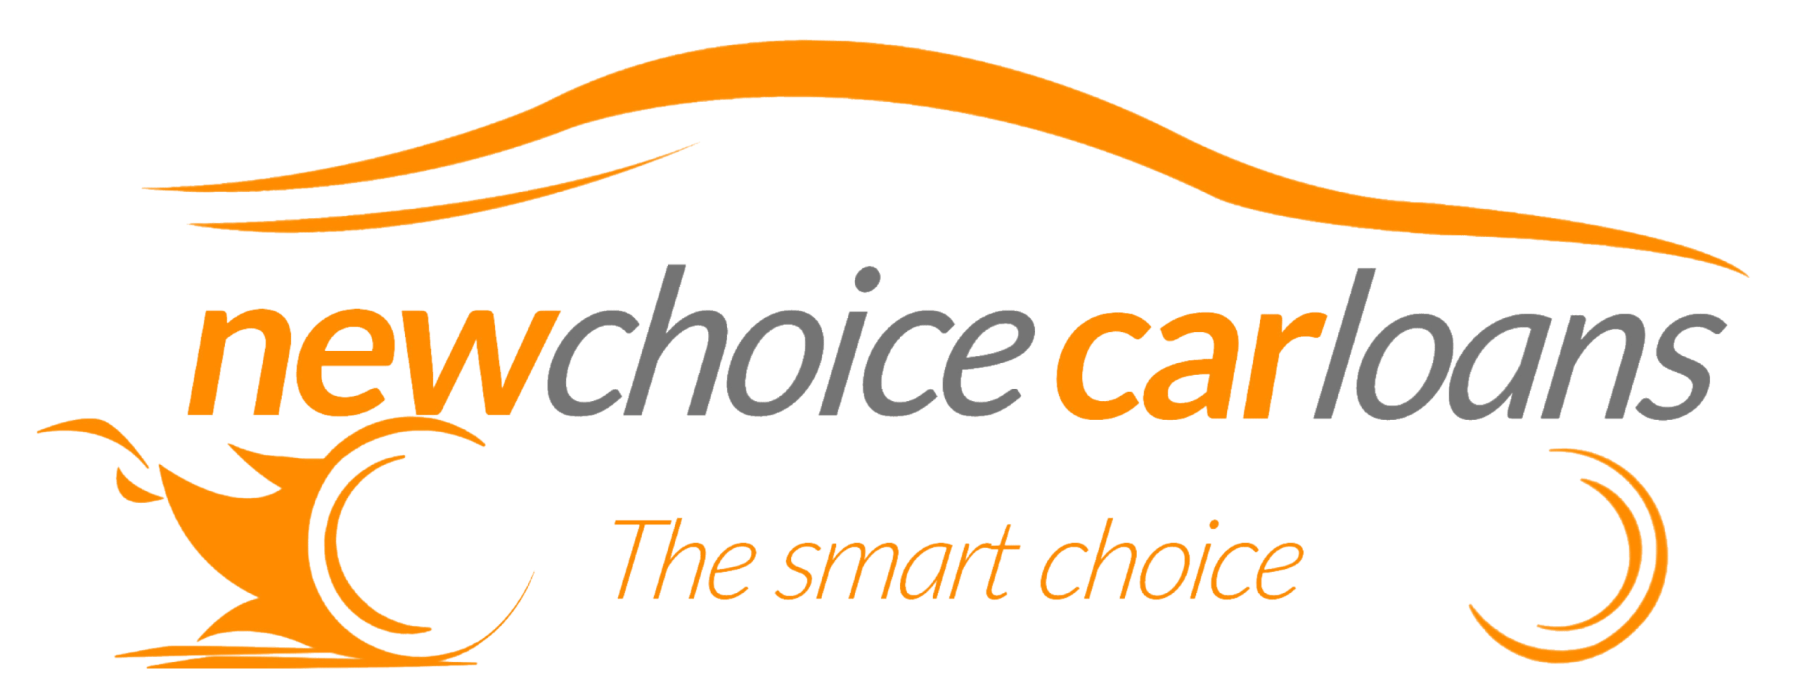 New Choice Car loans